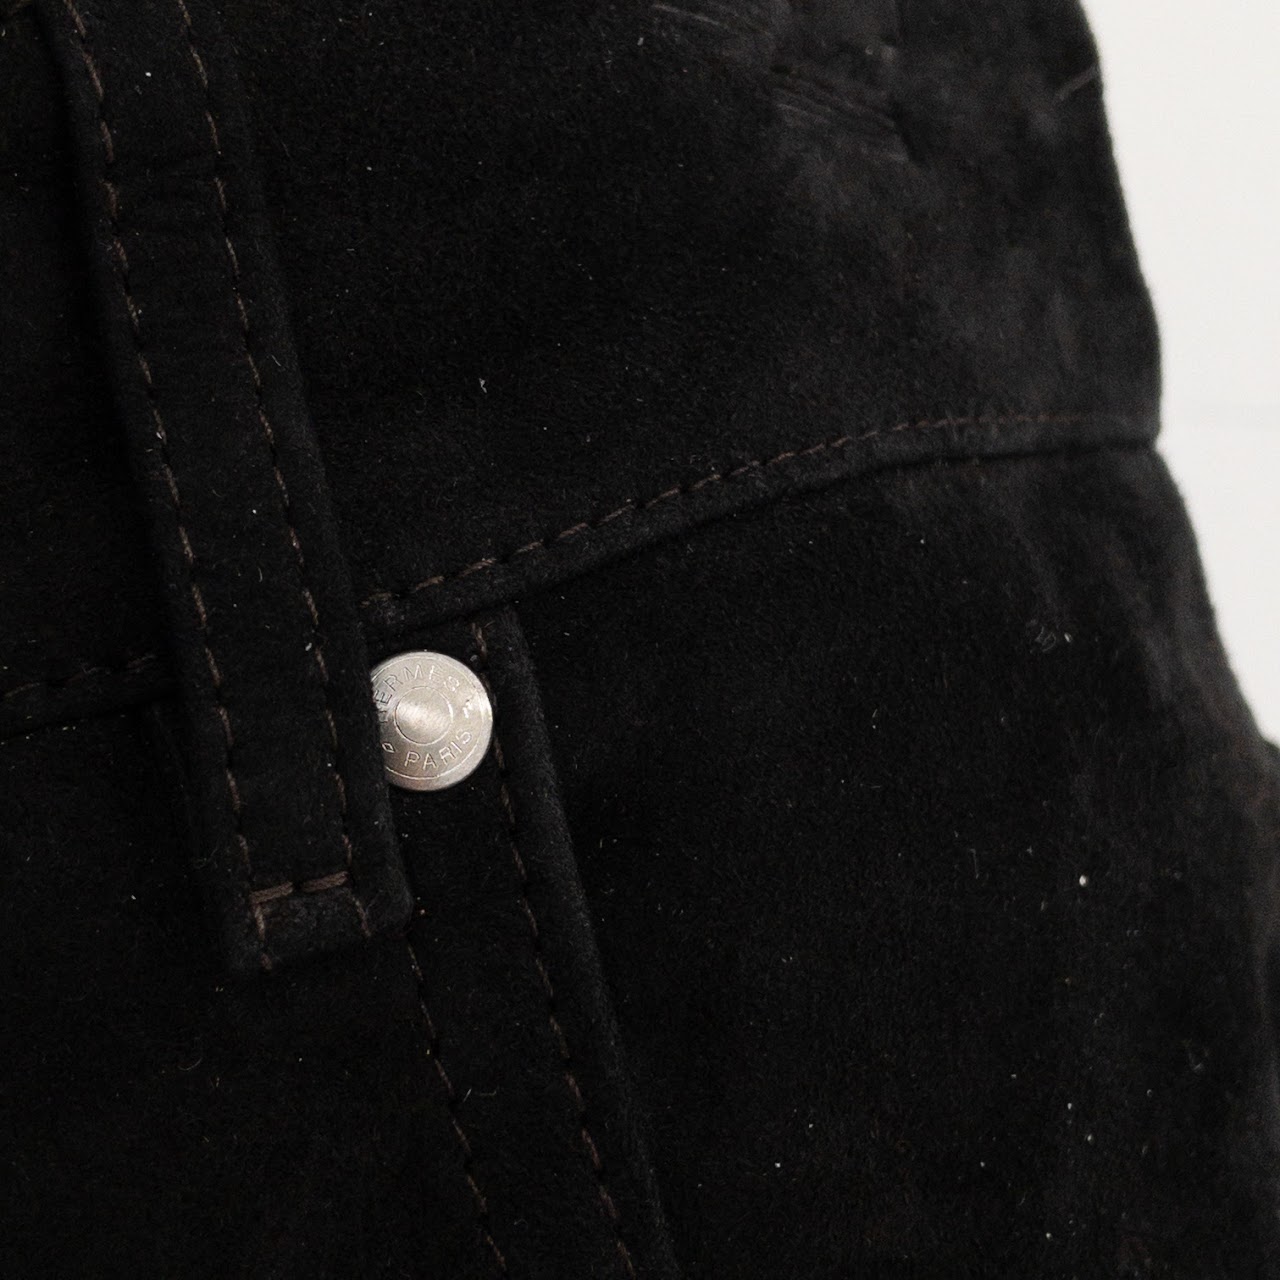 Hermès Suede 5-Pocket Pants